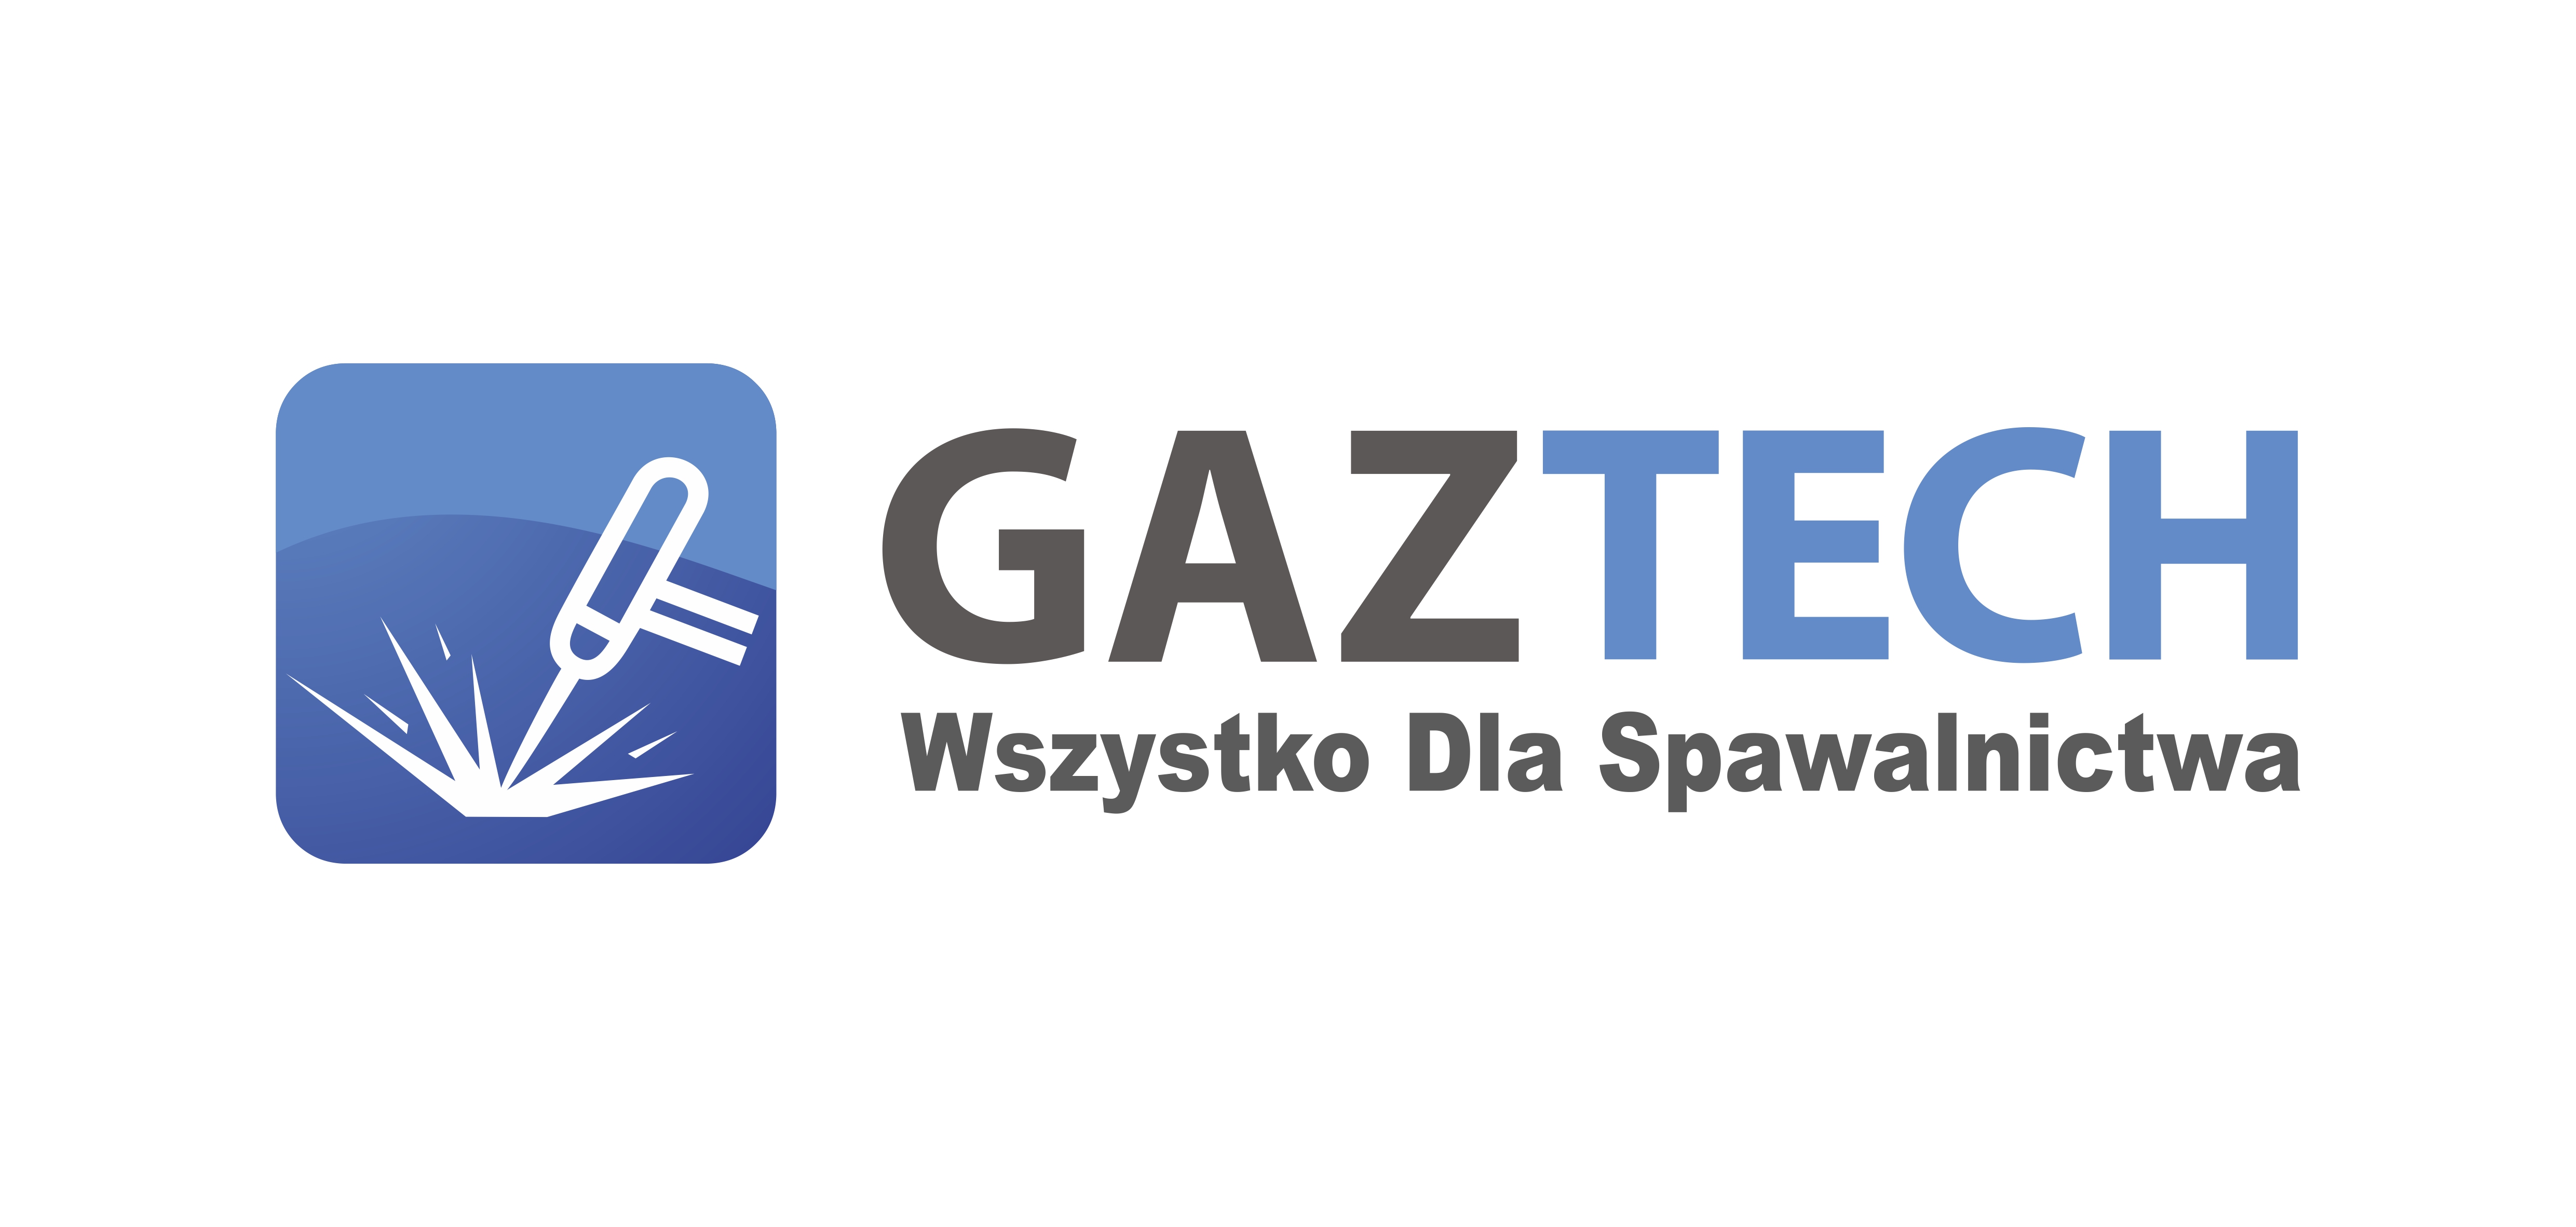 Logotyp firmy Gaztech z podpisem wszystko dla spawalnictwa